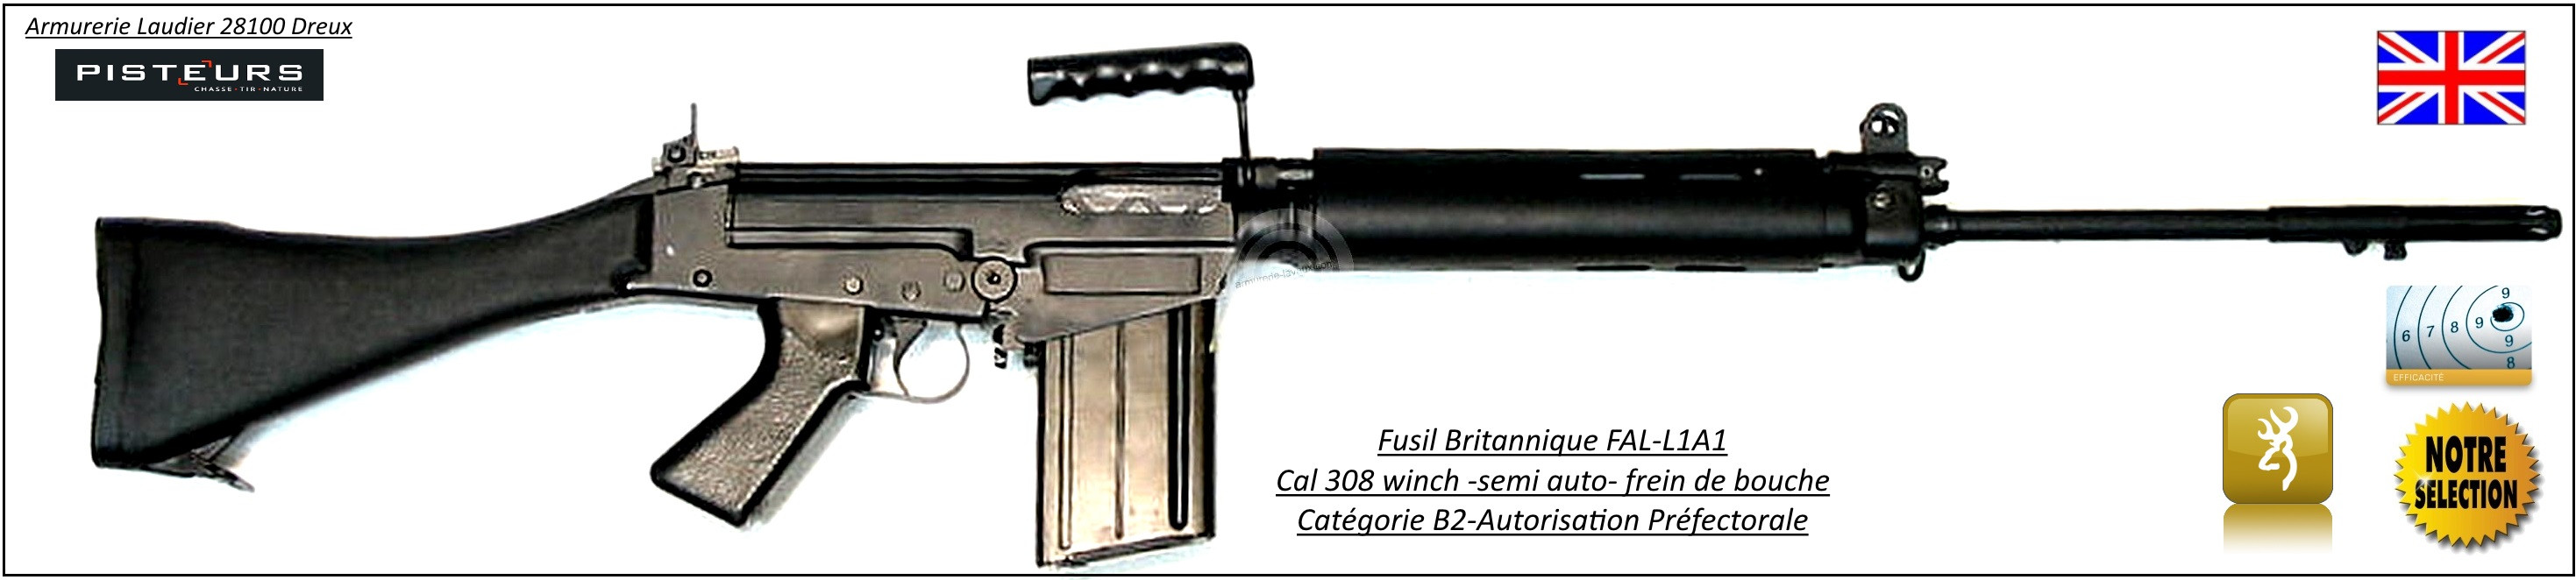 Carabine-FAL-L1-A1-Semi-automatique Britannique-Calibre  308 Winch-Catégorie-B2 E-Ref 29424